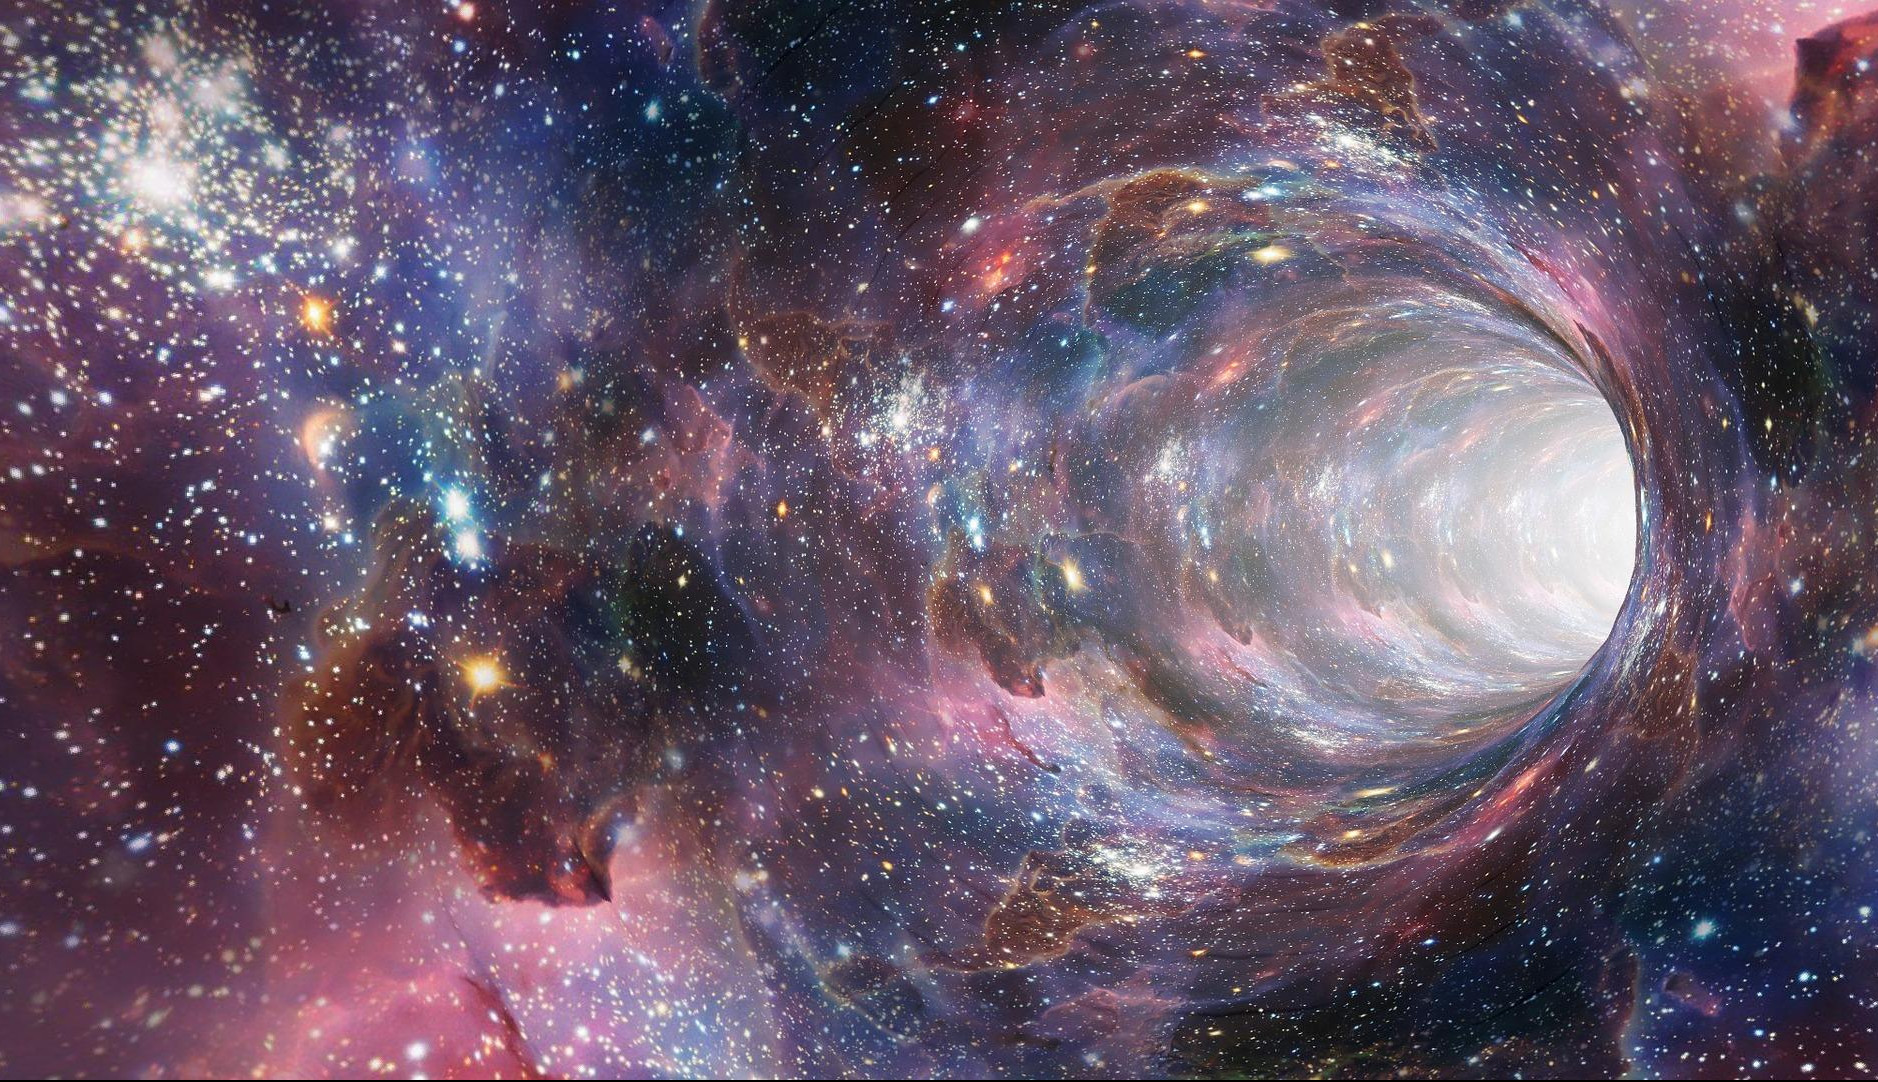 OBJAVLJENA FOTKA DŽINOVSKE CRNE RUPE! Šok u svemiru - 4 miliona puta je veća od Sunca (FOTO)